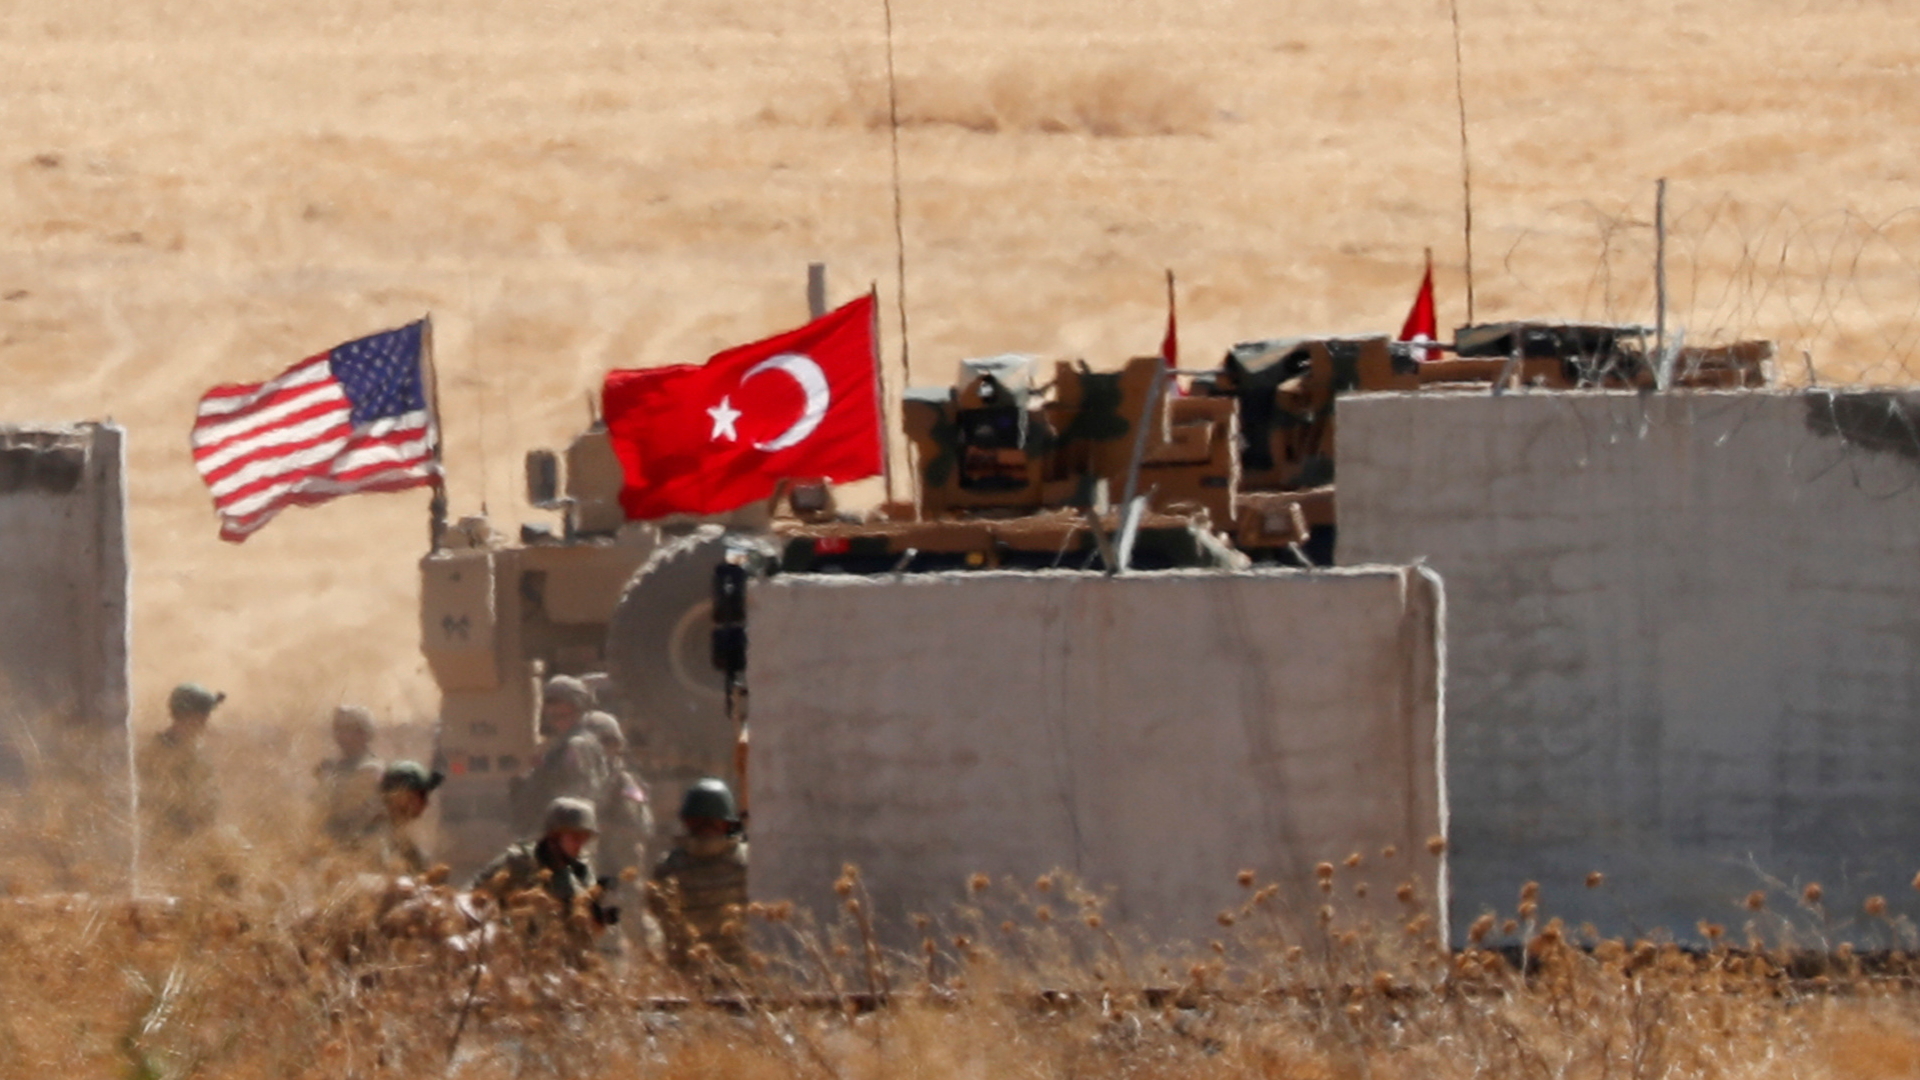 Archivbild von türkischen und US-Truppen bei einem gemeinsamen Einsatz in Syrien